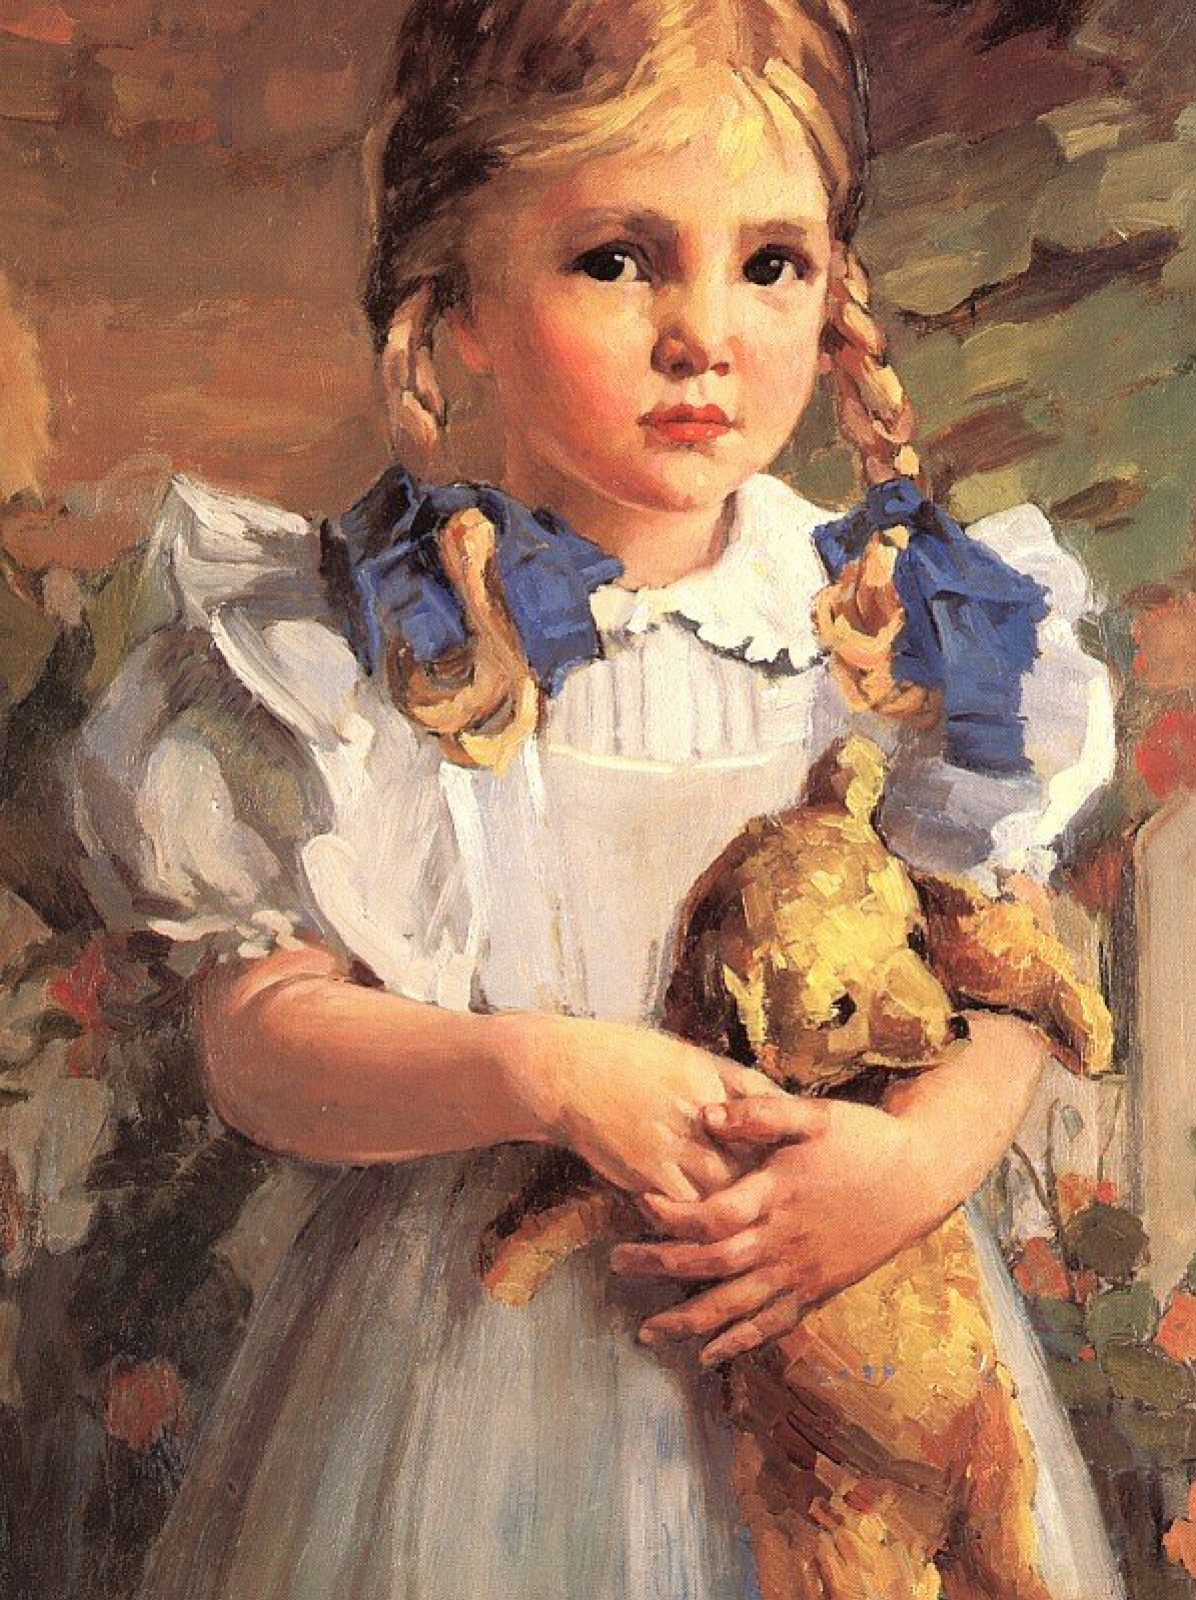 Картинка девочка с куклой. Бесси Гувер Вессель. Бесси Гувер Вессель художник. Тропинин портрет девочка с куклой. Вессель, Бесси х. (урожденная Хувер, 1889-1973).